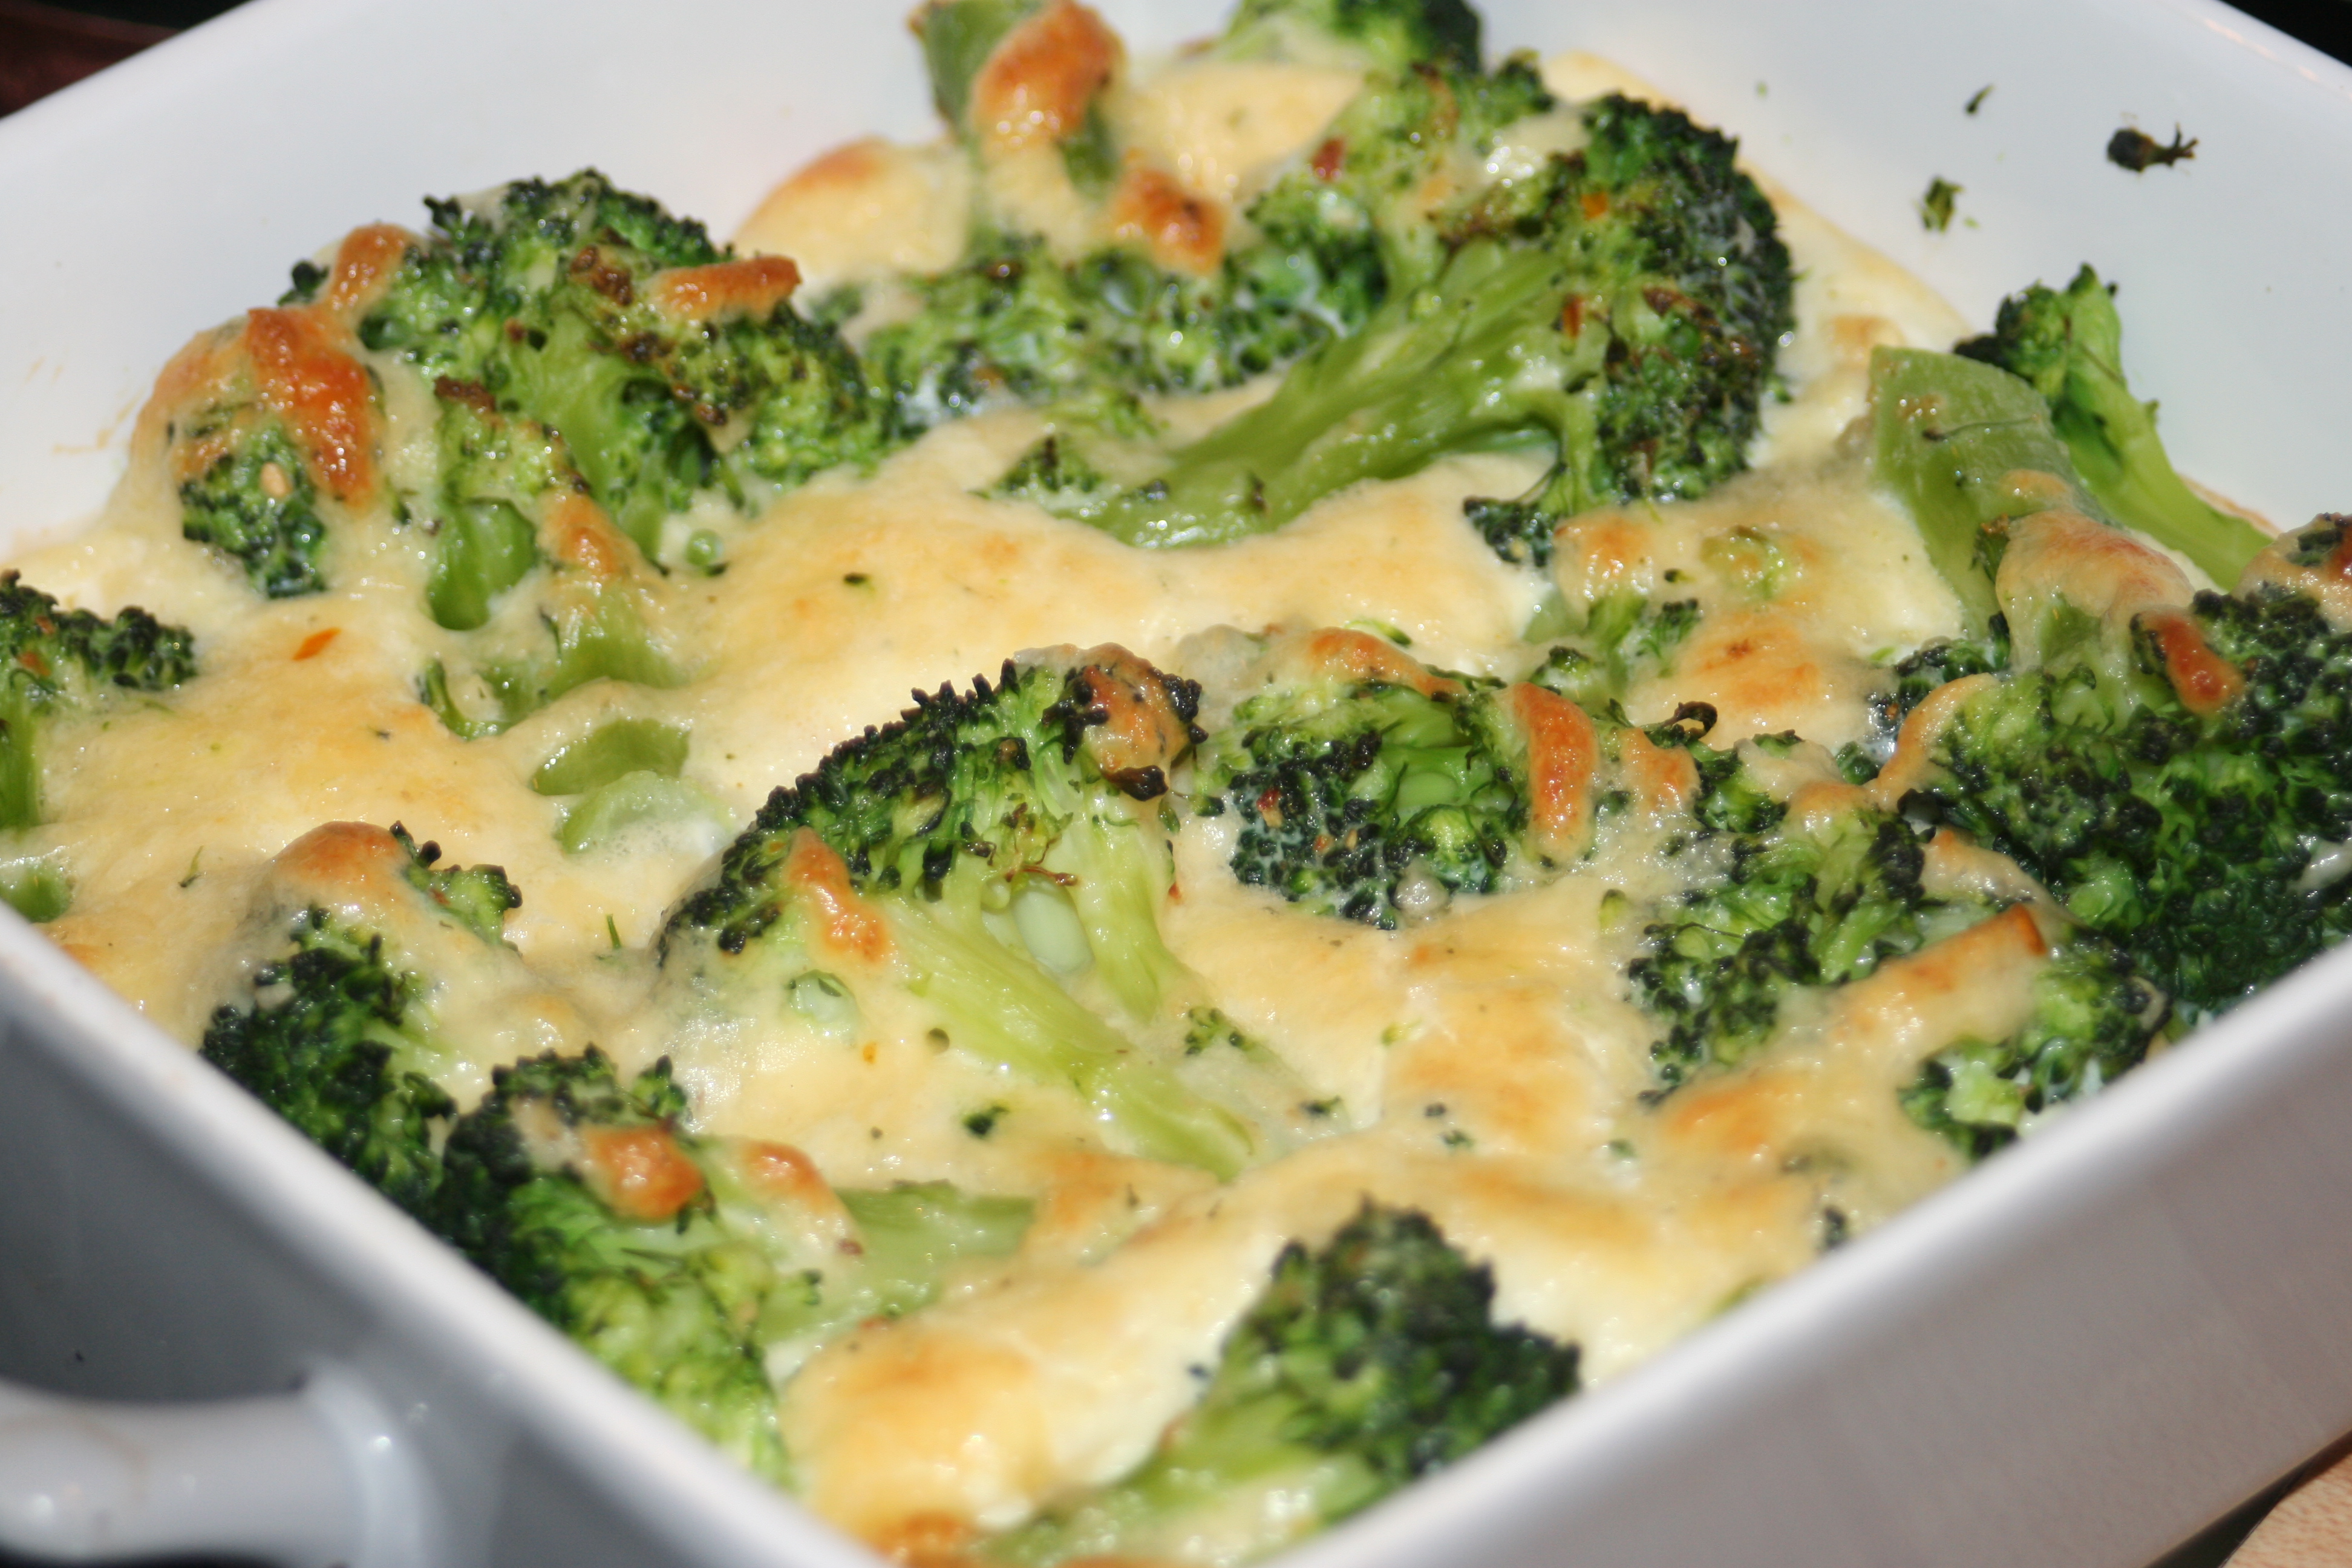 Preparación Para El Gratén De Patatas Y Broccoli